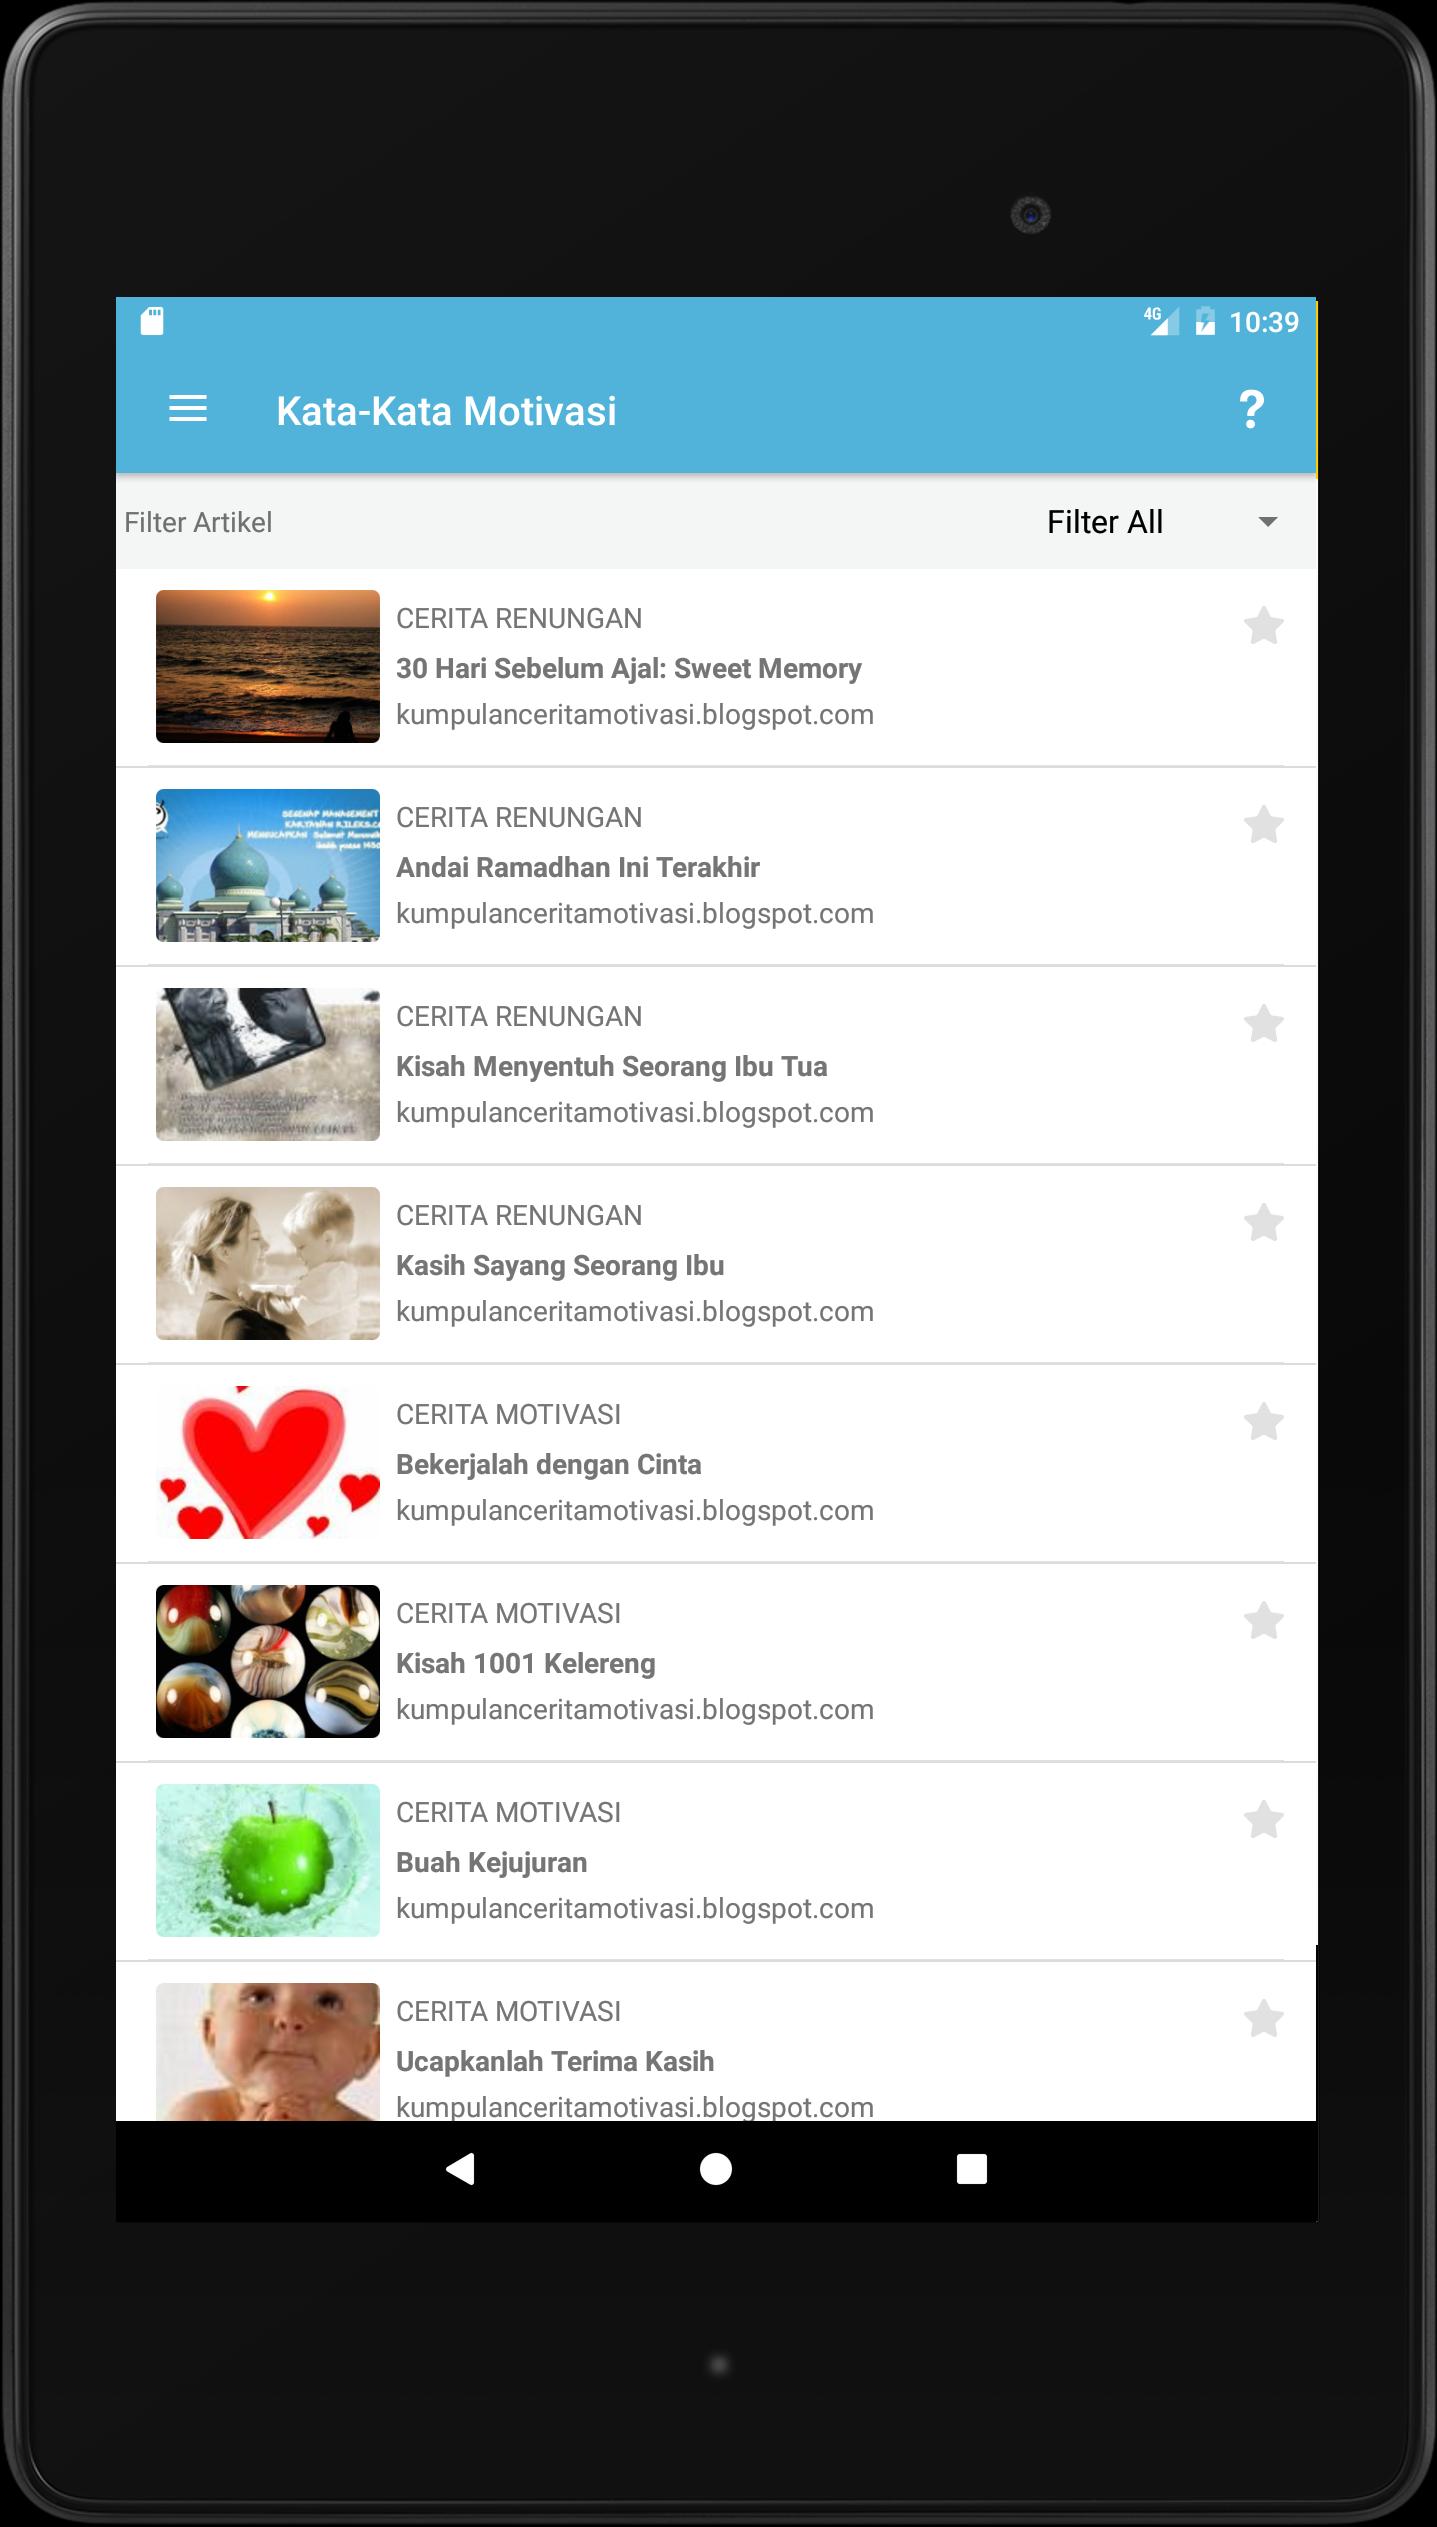 Kata Kata Motivasi For Android Apk Download